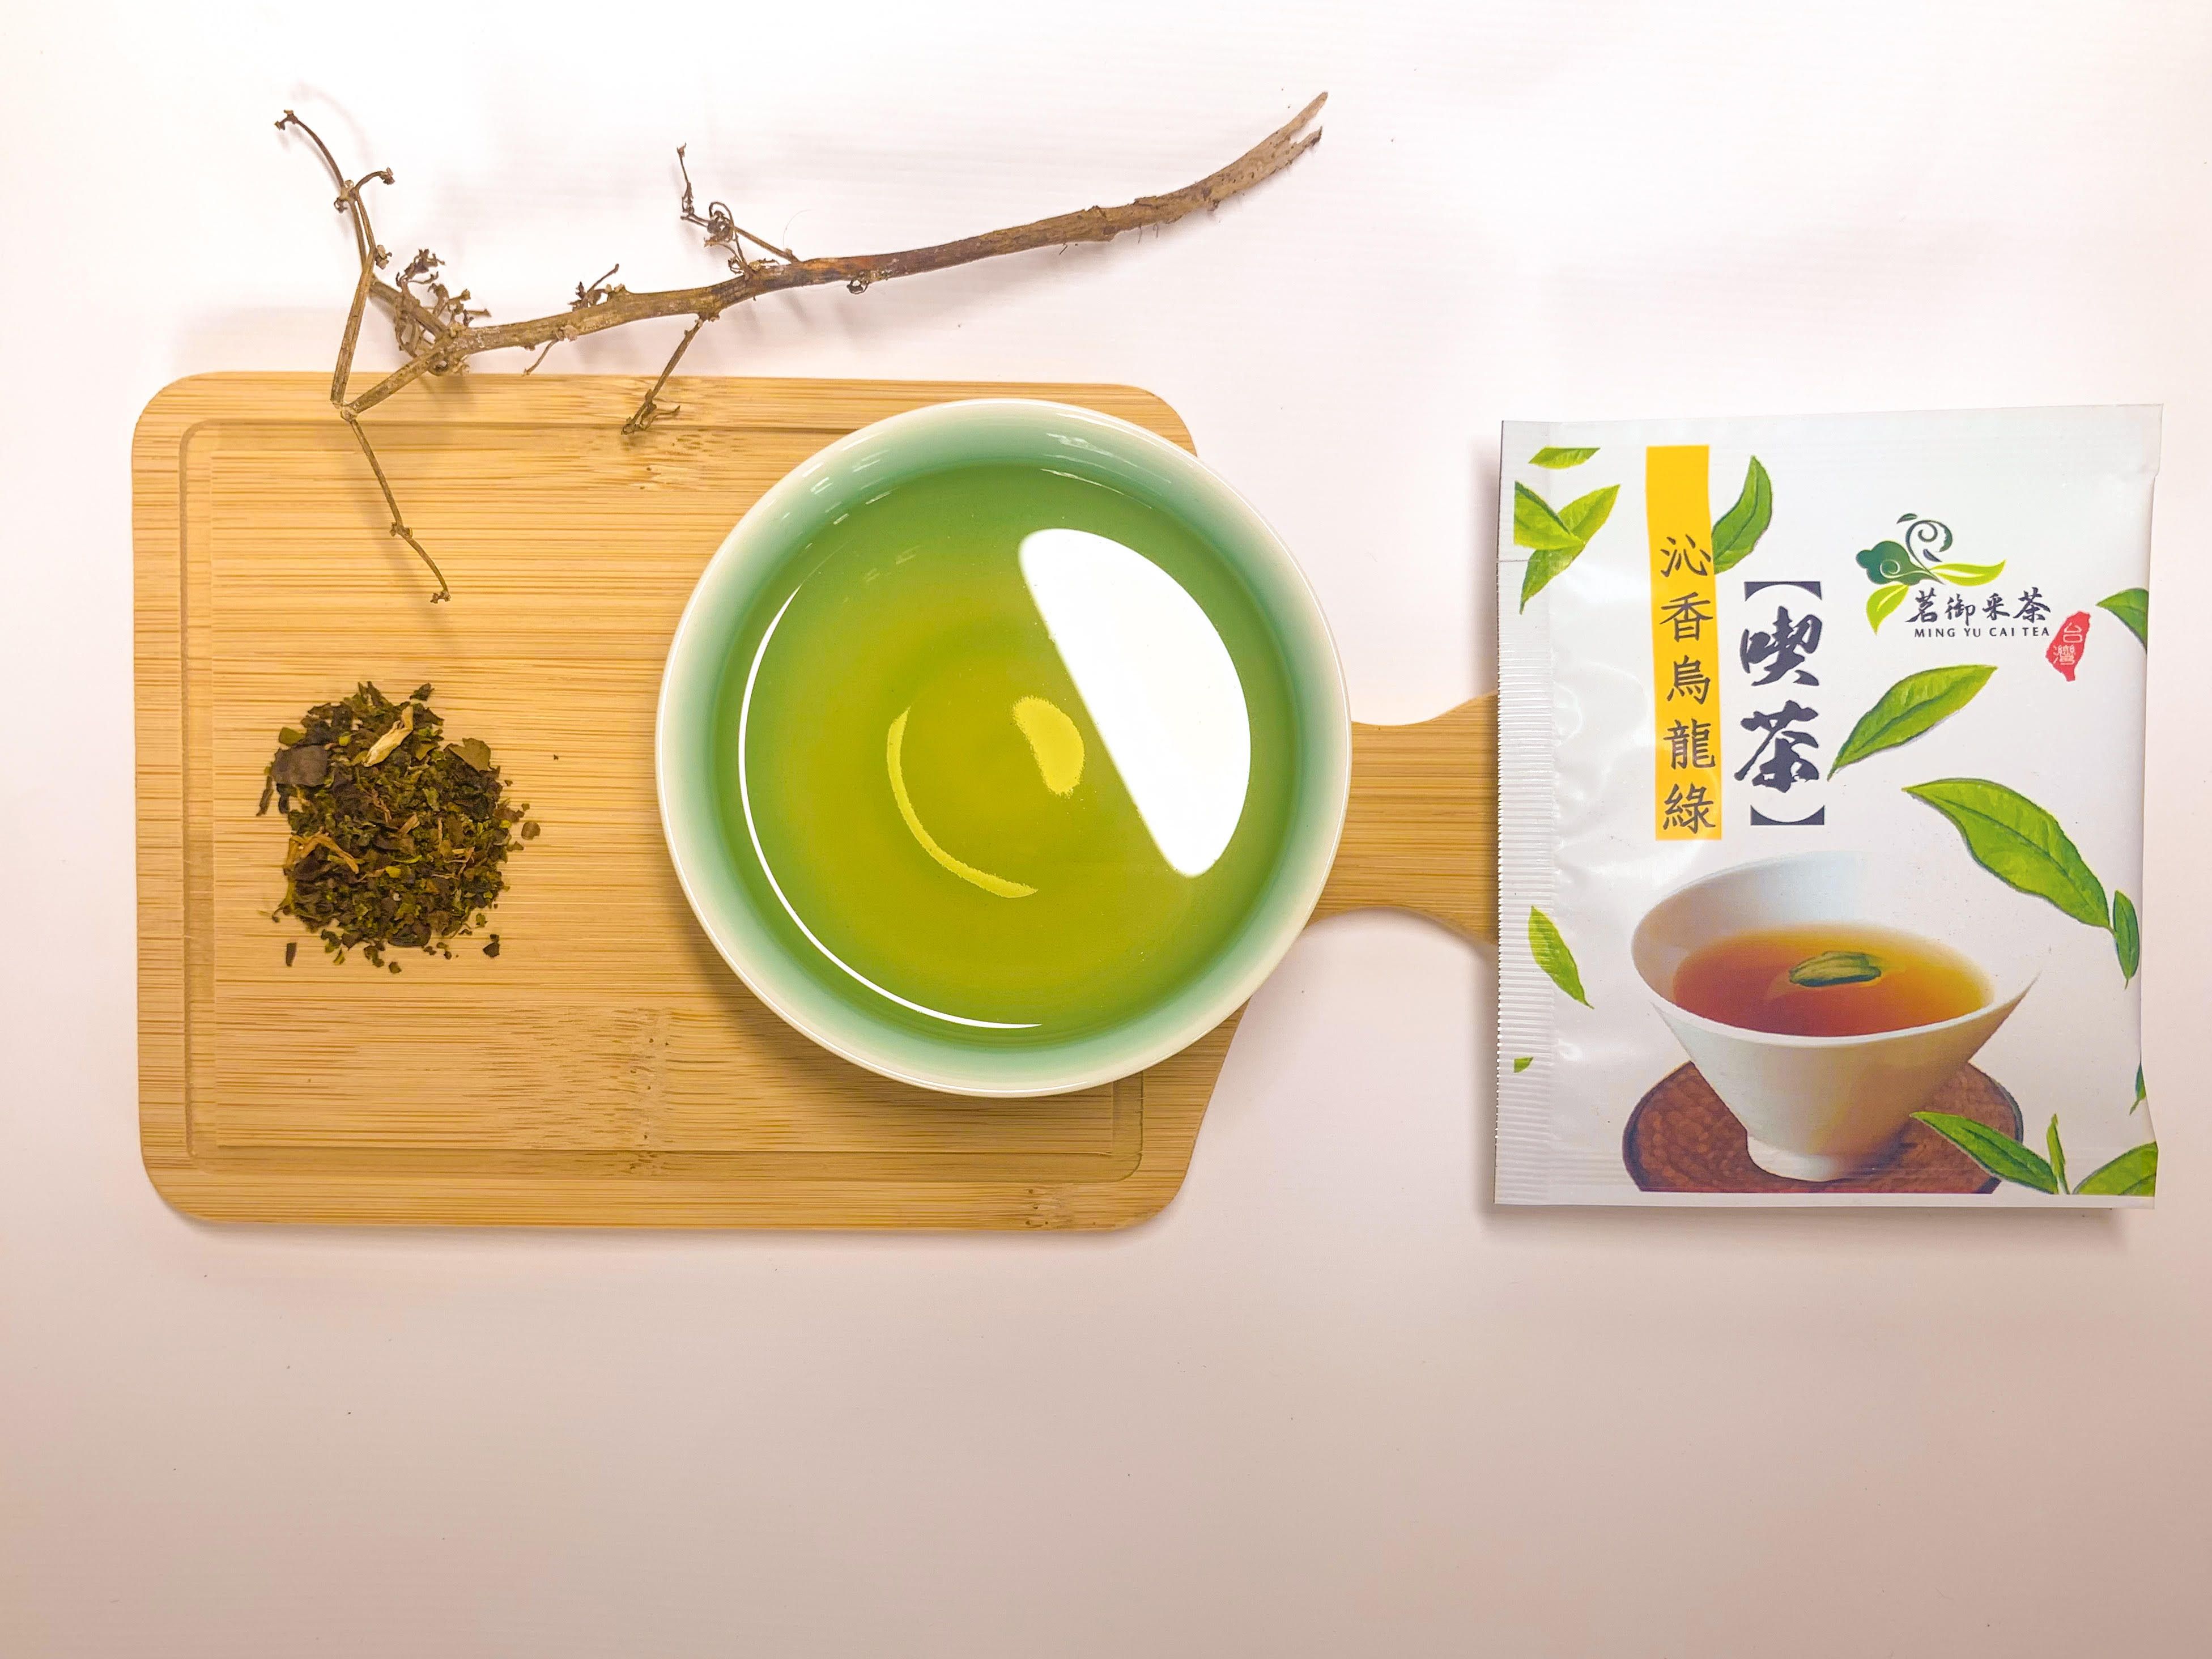 茗御采茶-新上市沁香烏龍綠茶40入包裝